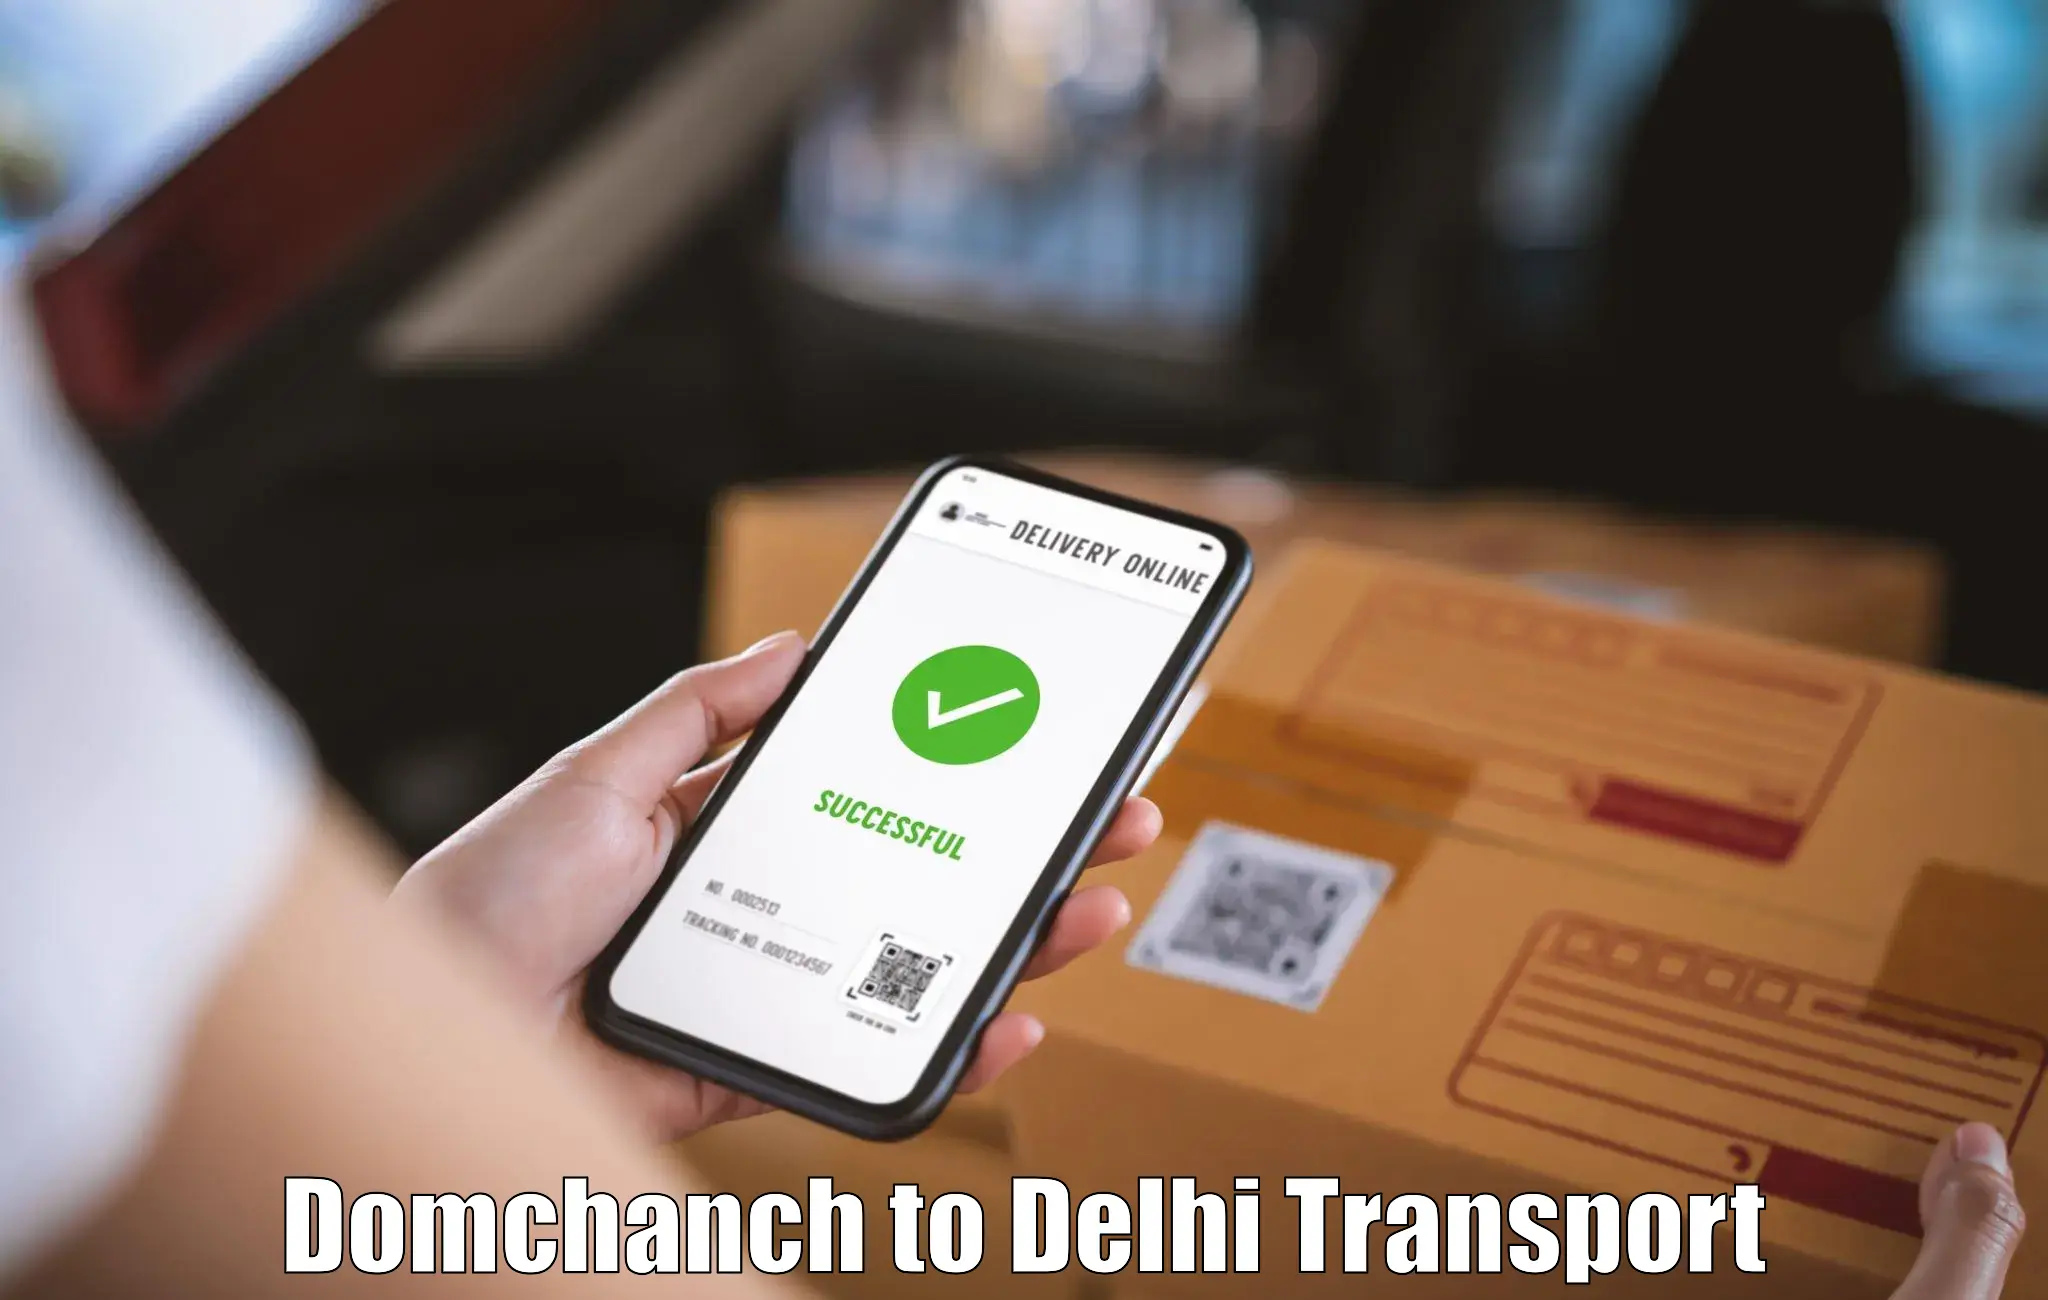 Furniture transport service Domchanch to Delhi